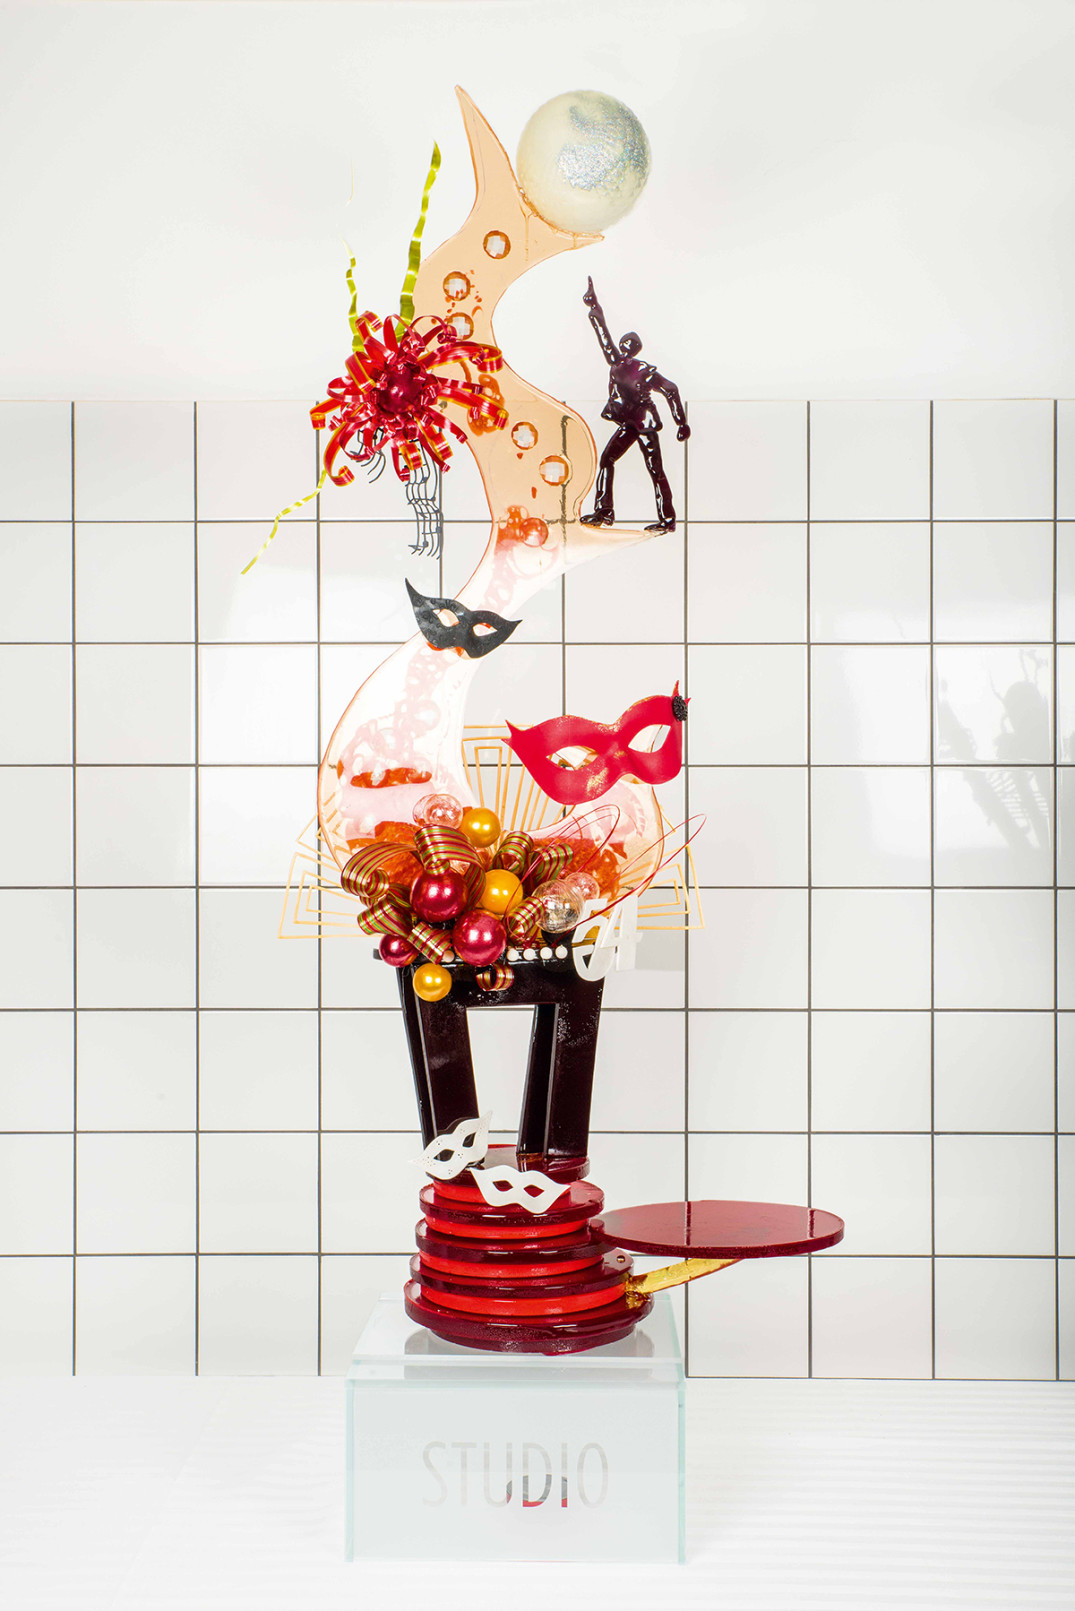 Sockerskulptur gjord på 20 kilo socker; ingången till Studio 54 med ett stigande dansgolv där discokungen och discokulan snurrade runt allt lika högt som chokladskulpturen.